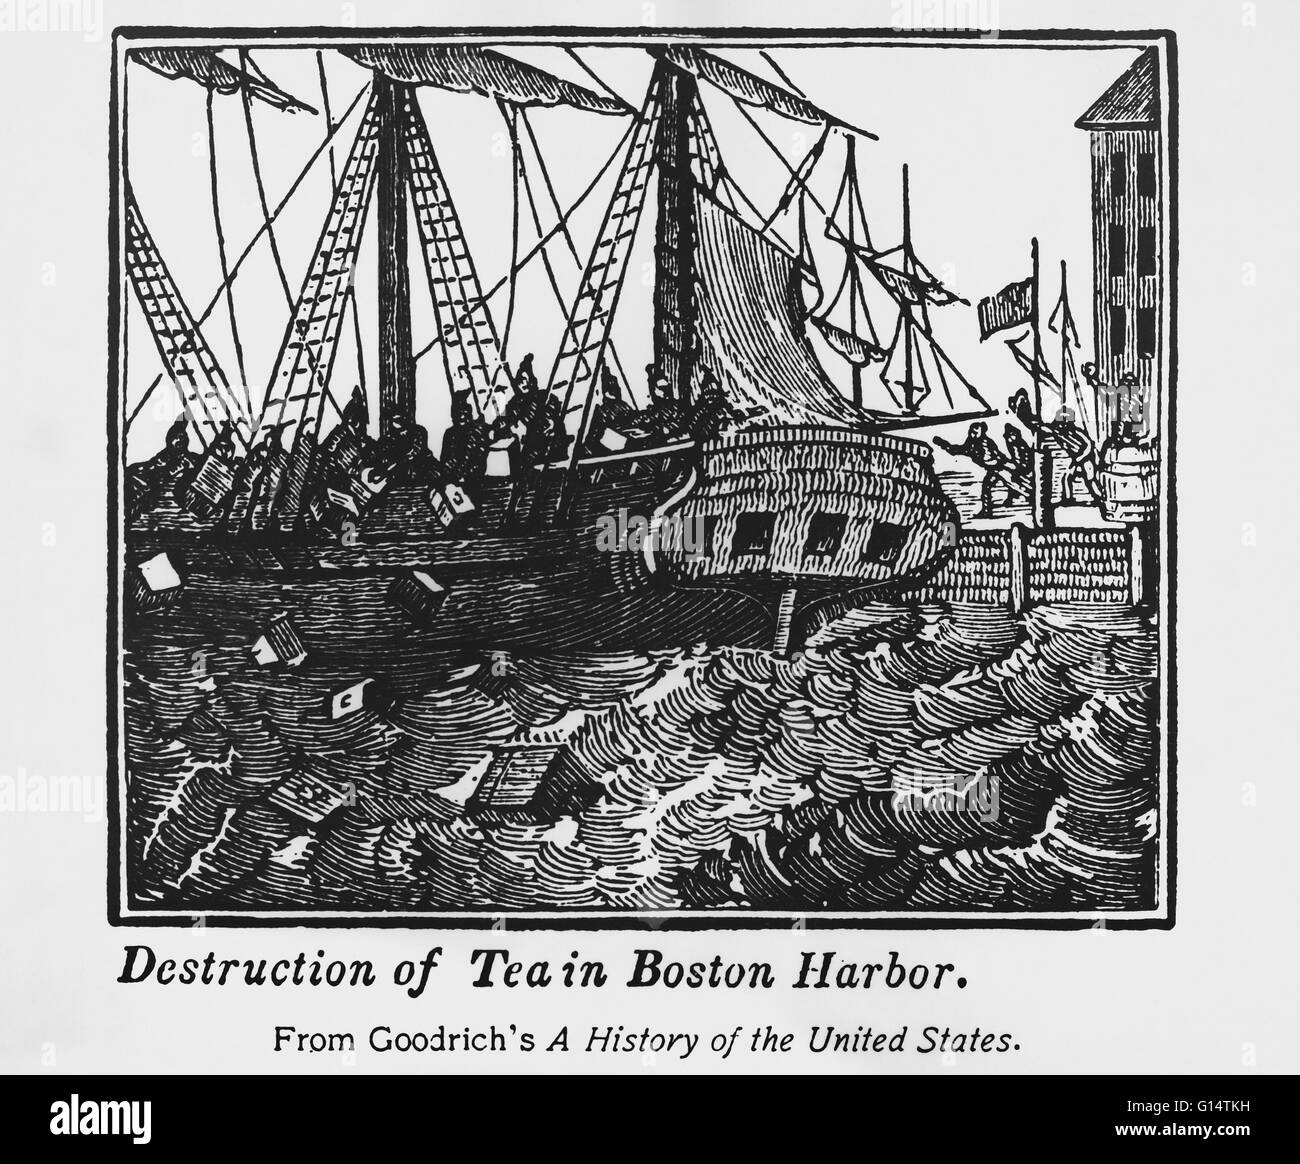 Die Boston Tea Party war eine direkte Aktion von Kolonisten in Boston, einer Stadt in der britischen Kolonie von Massachusetts, gegen die britische Regierung und die East India Company, die den Tee, die in den Kolonien importiert gesteuert. Am 16. Dezember 1773, nach o Stockfoto